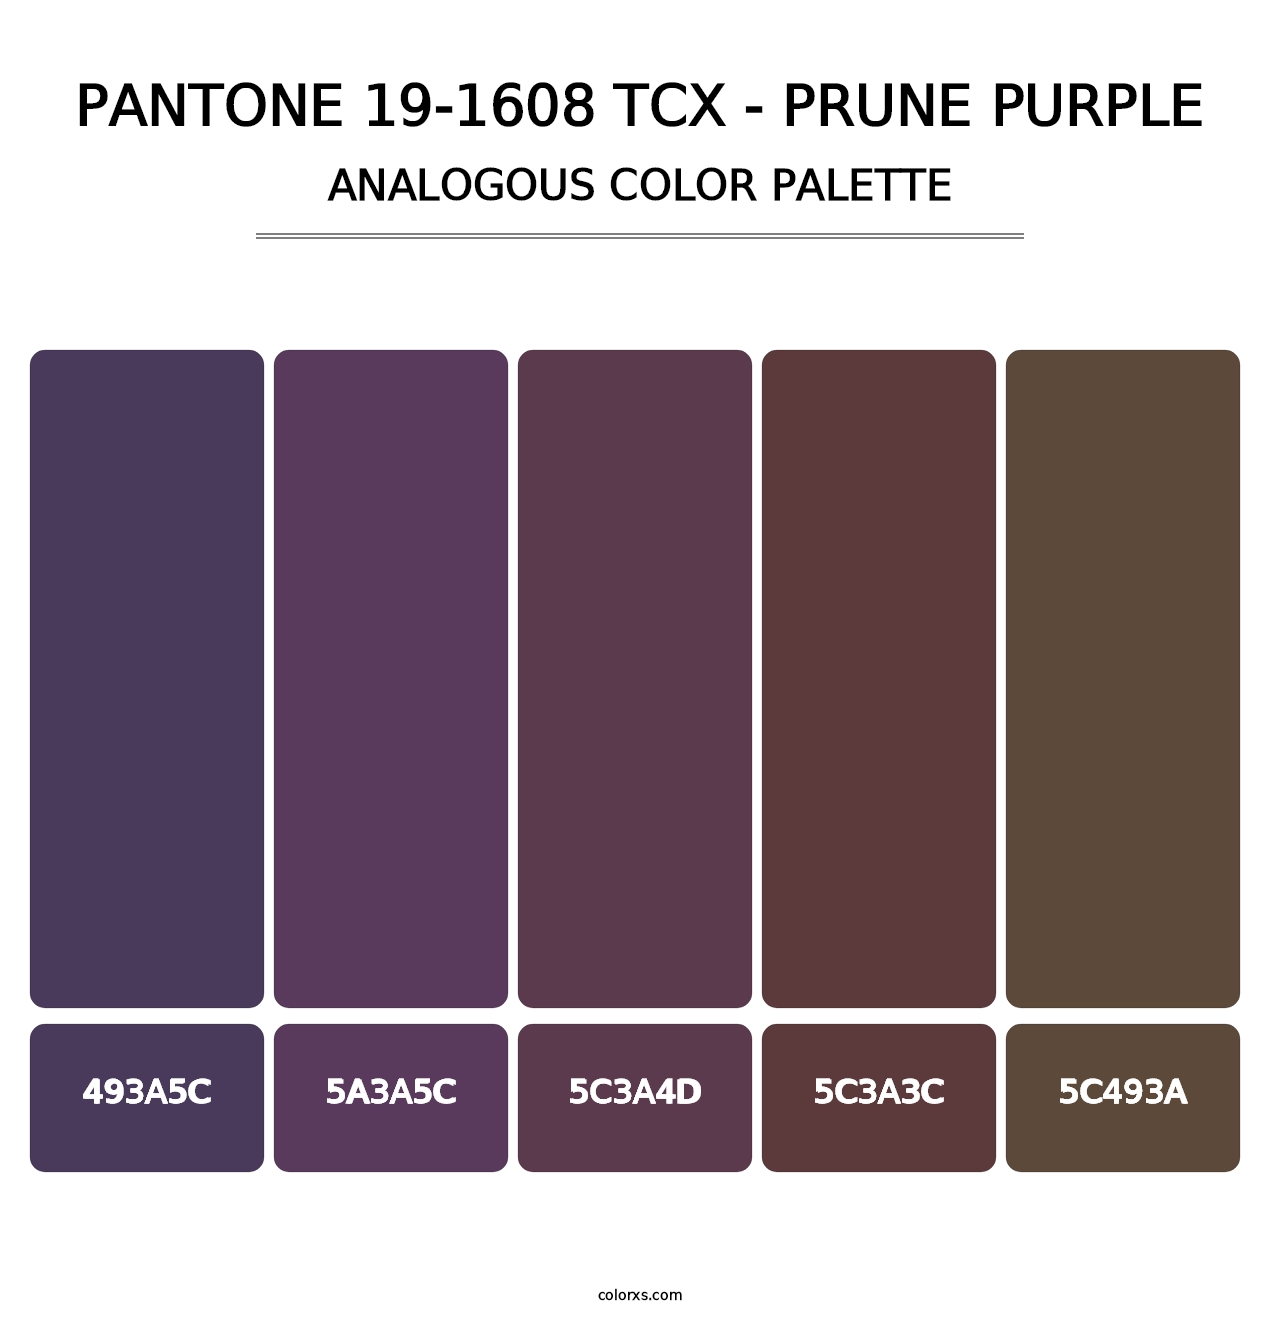 PANTONE 19-1608 TCX - Prune Purple - Analogous Color Palette